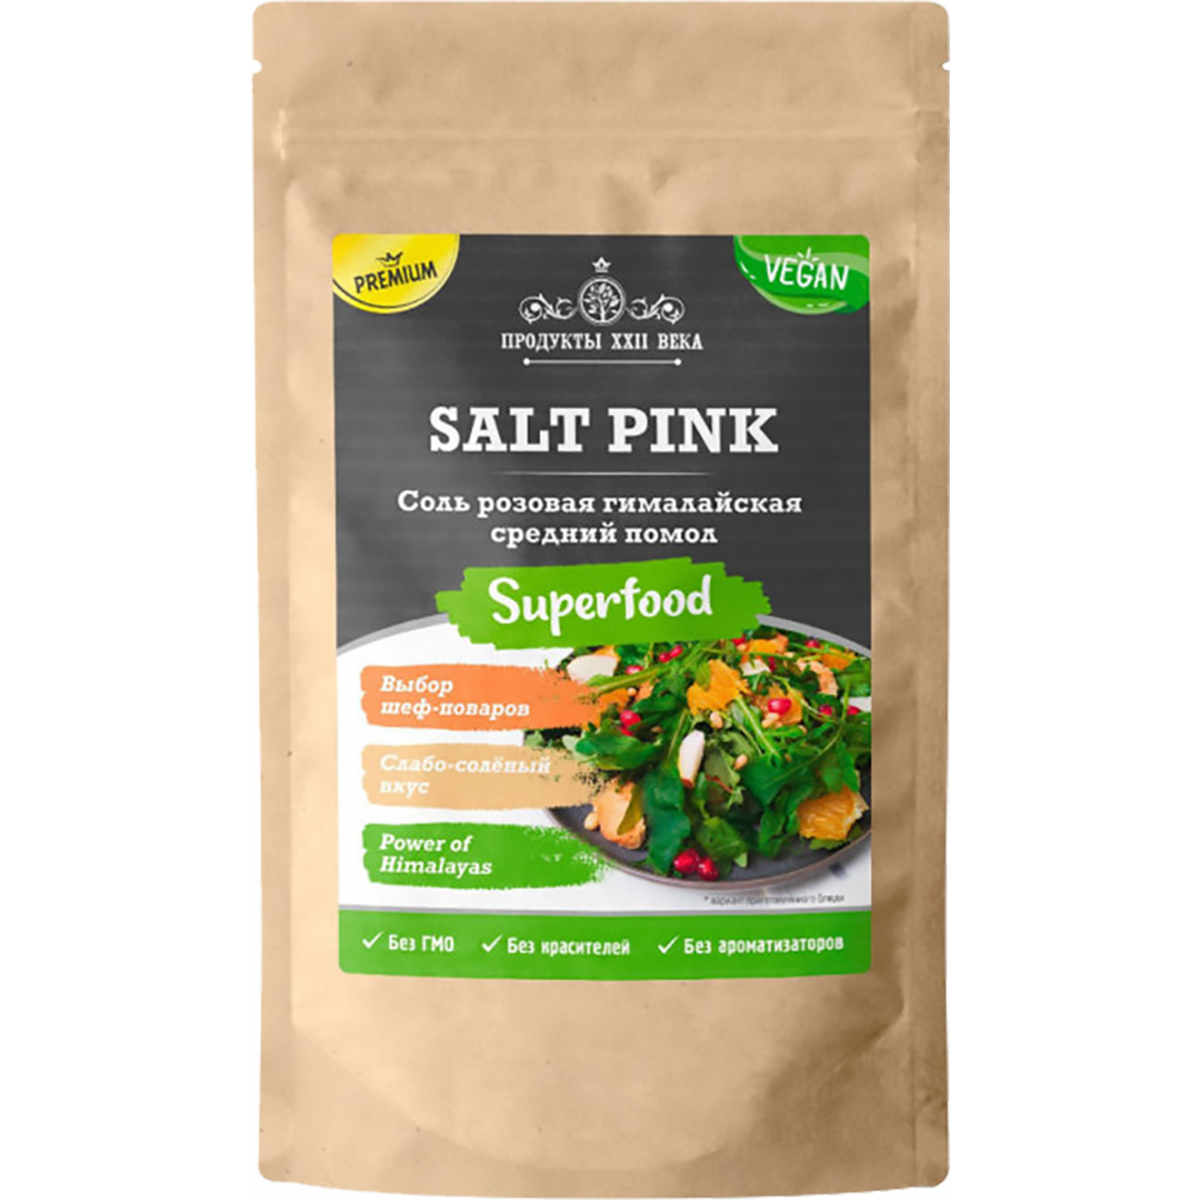 Соль розовая гималайская, средний помол 2-5 мм, 400 гр, Продукты XXII века